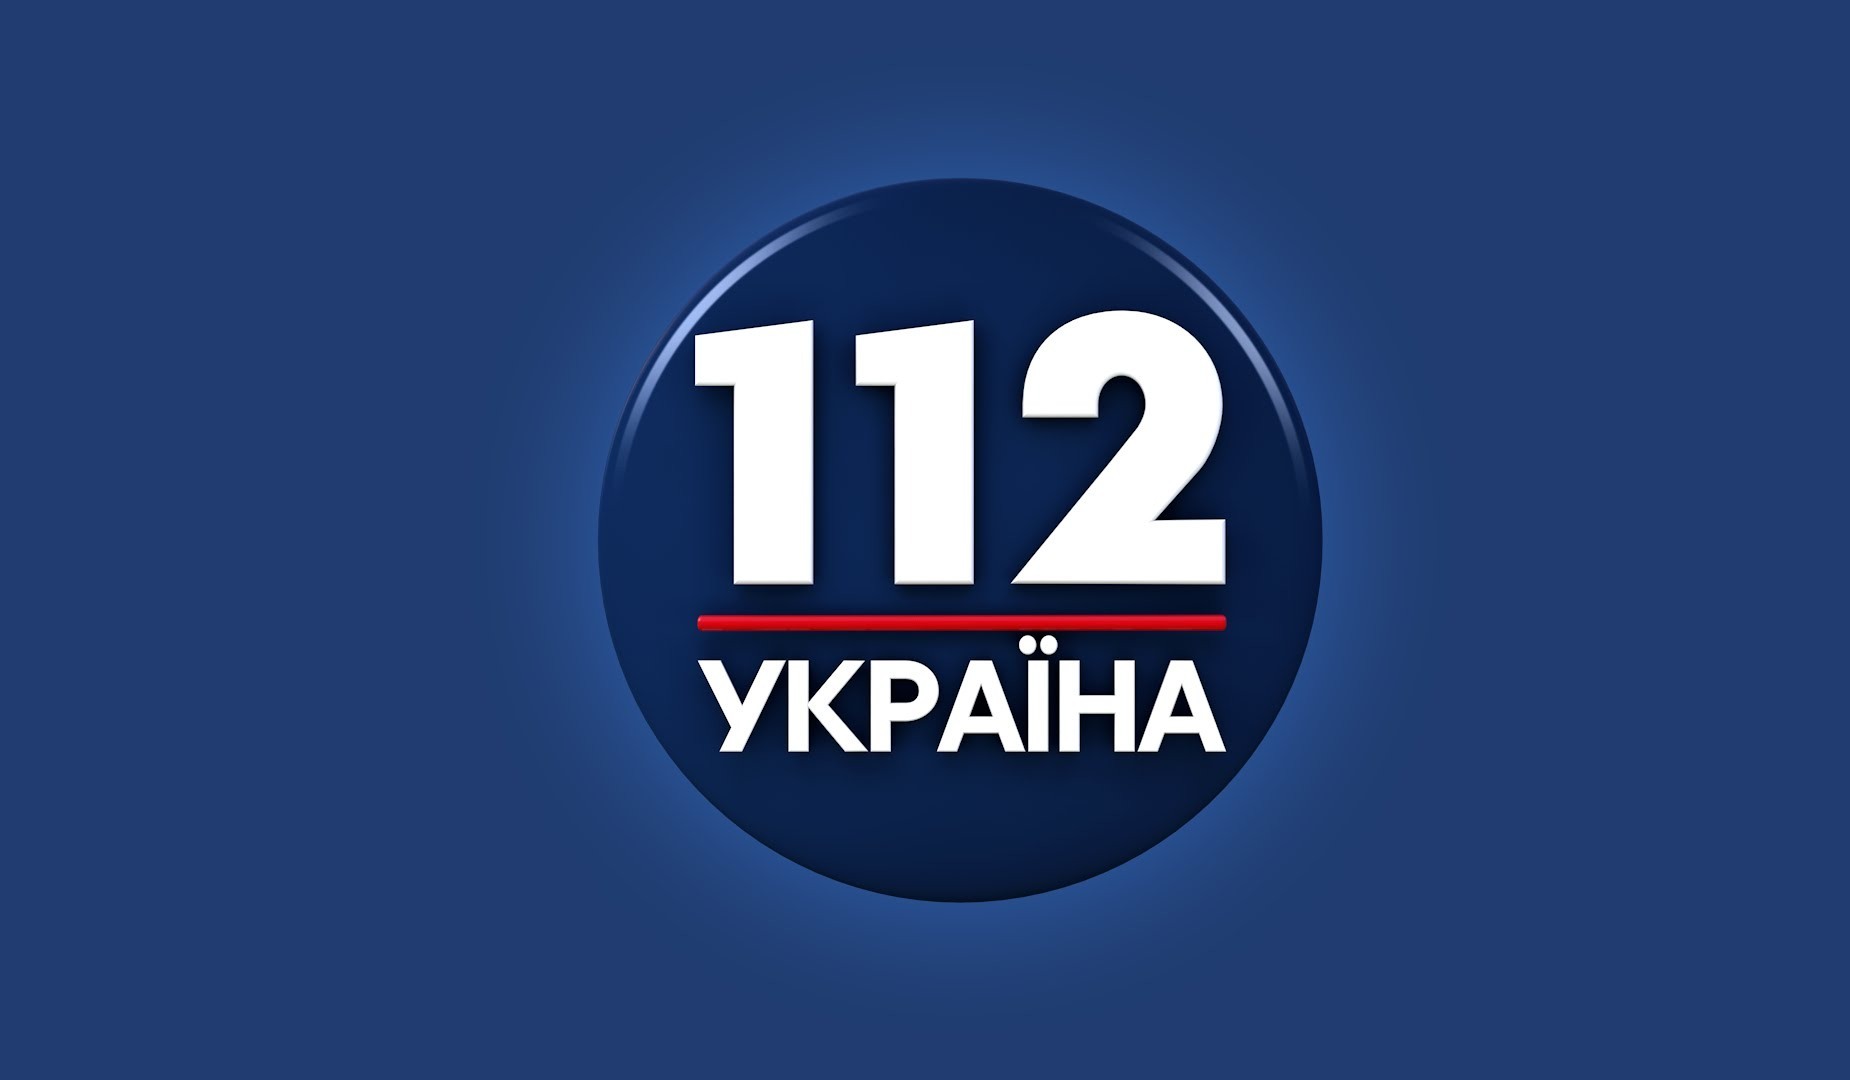 На каналі «112 Україна» стартував проект «Близький Схід»